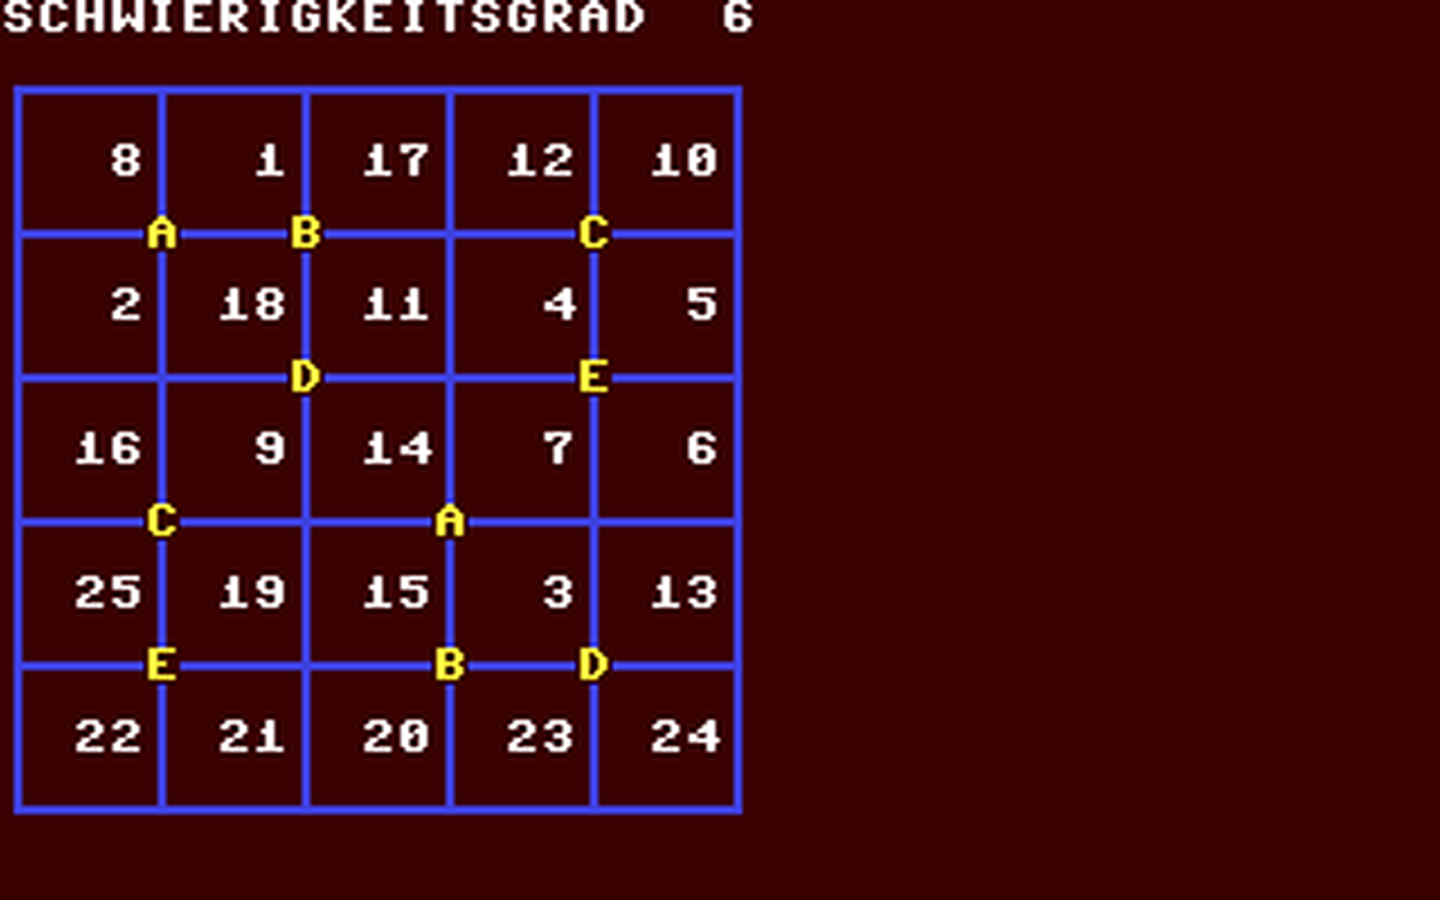 C64 GameBase Zahlen-Dreher_I